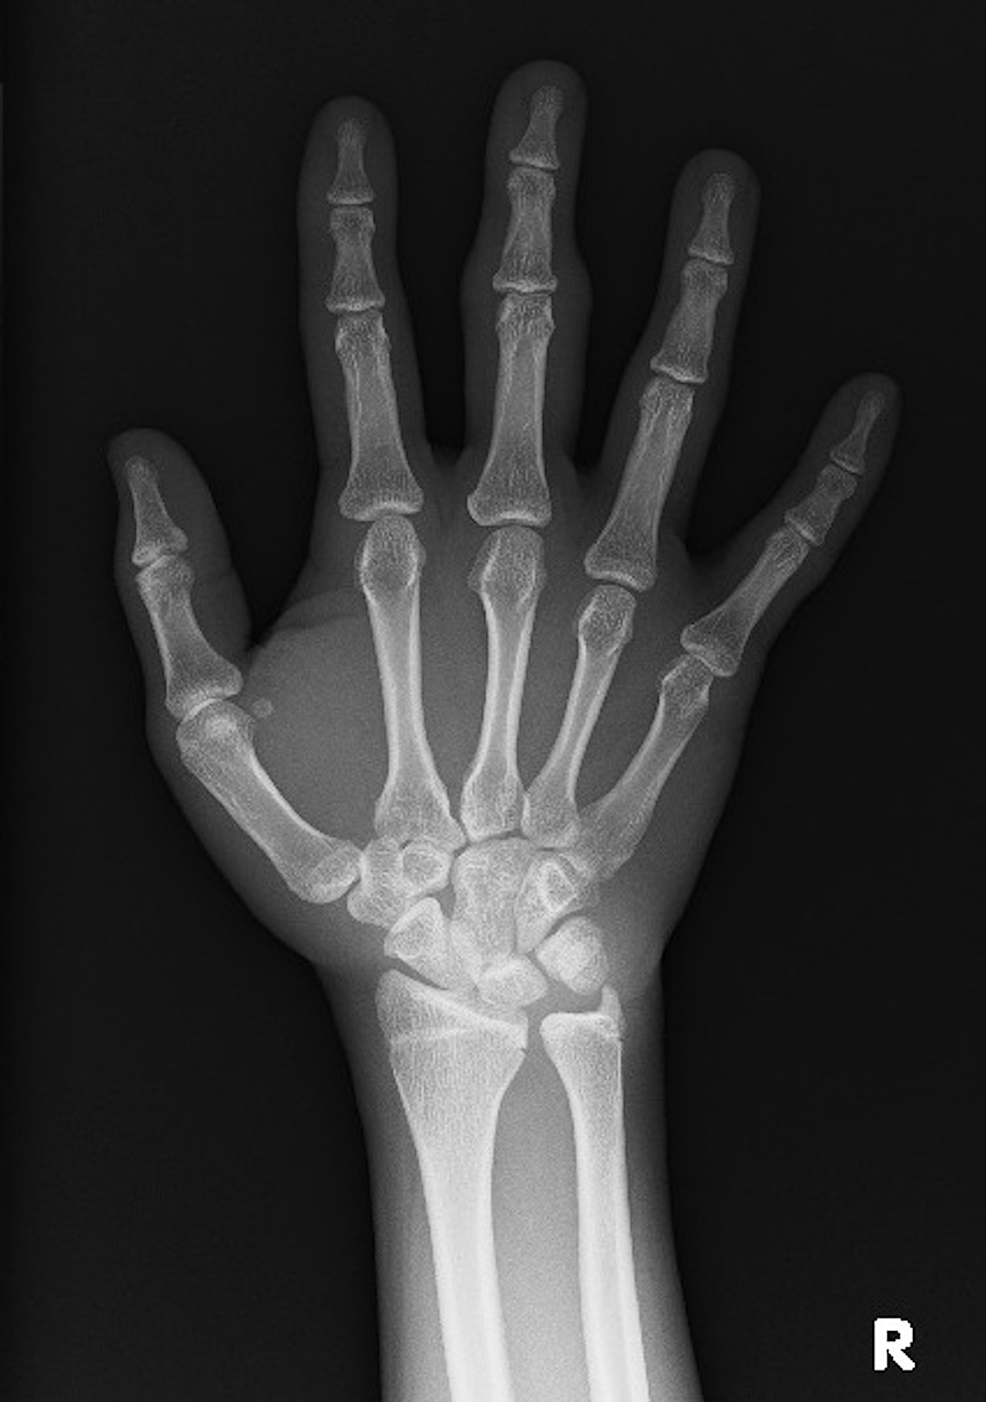 Plain X-ray